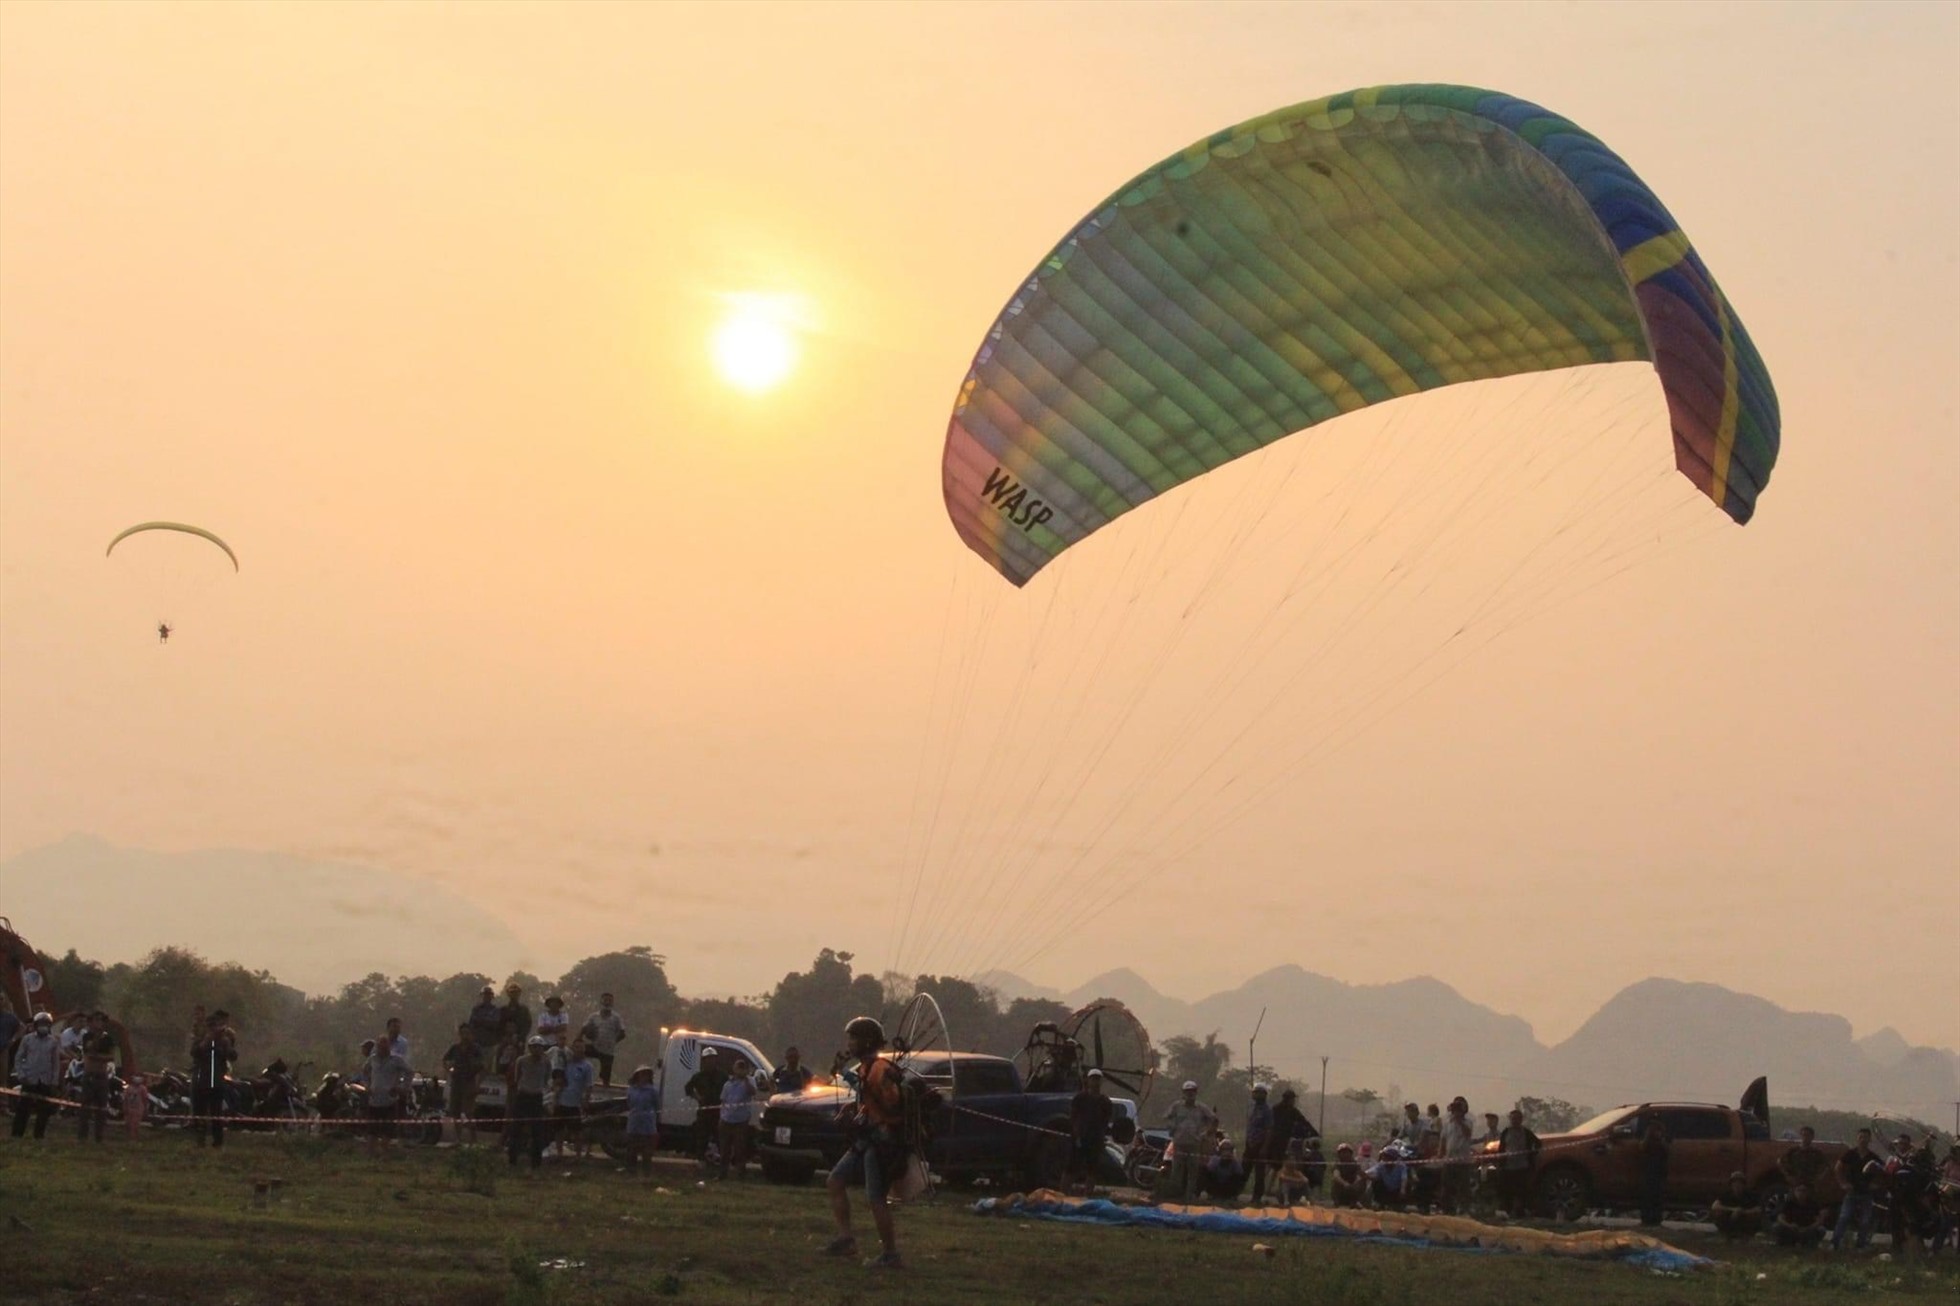 Khác với dù lượn thông thường (paragliding), dù lượn động cơ (paramotor) sử dụng động cơ cánh quạt sau lưng, giúp người chơi có thể bay lên từ đất bằng, mà không cần phải có đồi núi, tời kéo, không phải phụ thuộc vào gió hay luồng khí nóng. Ảnh: Quỳnh Trang